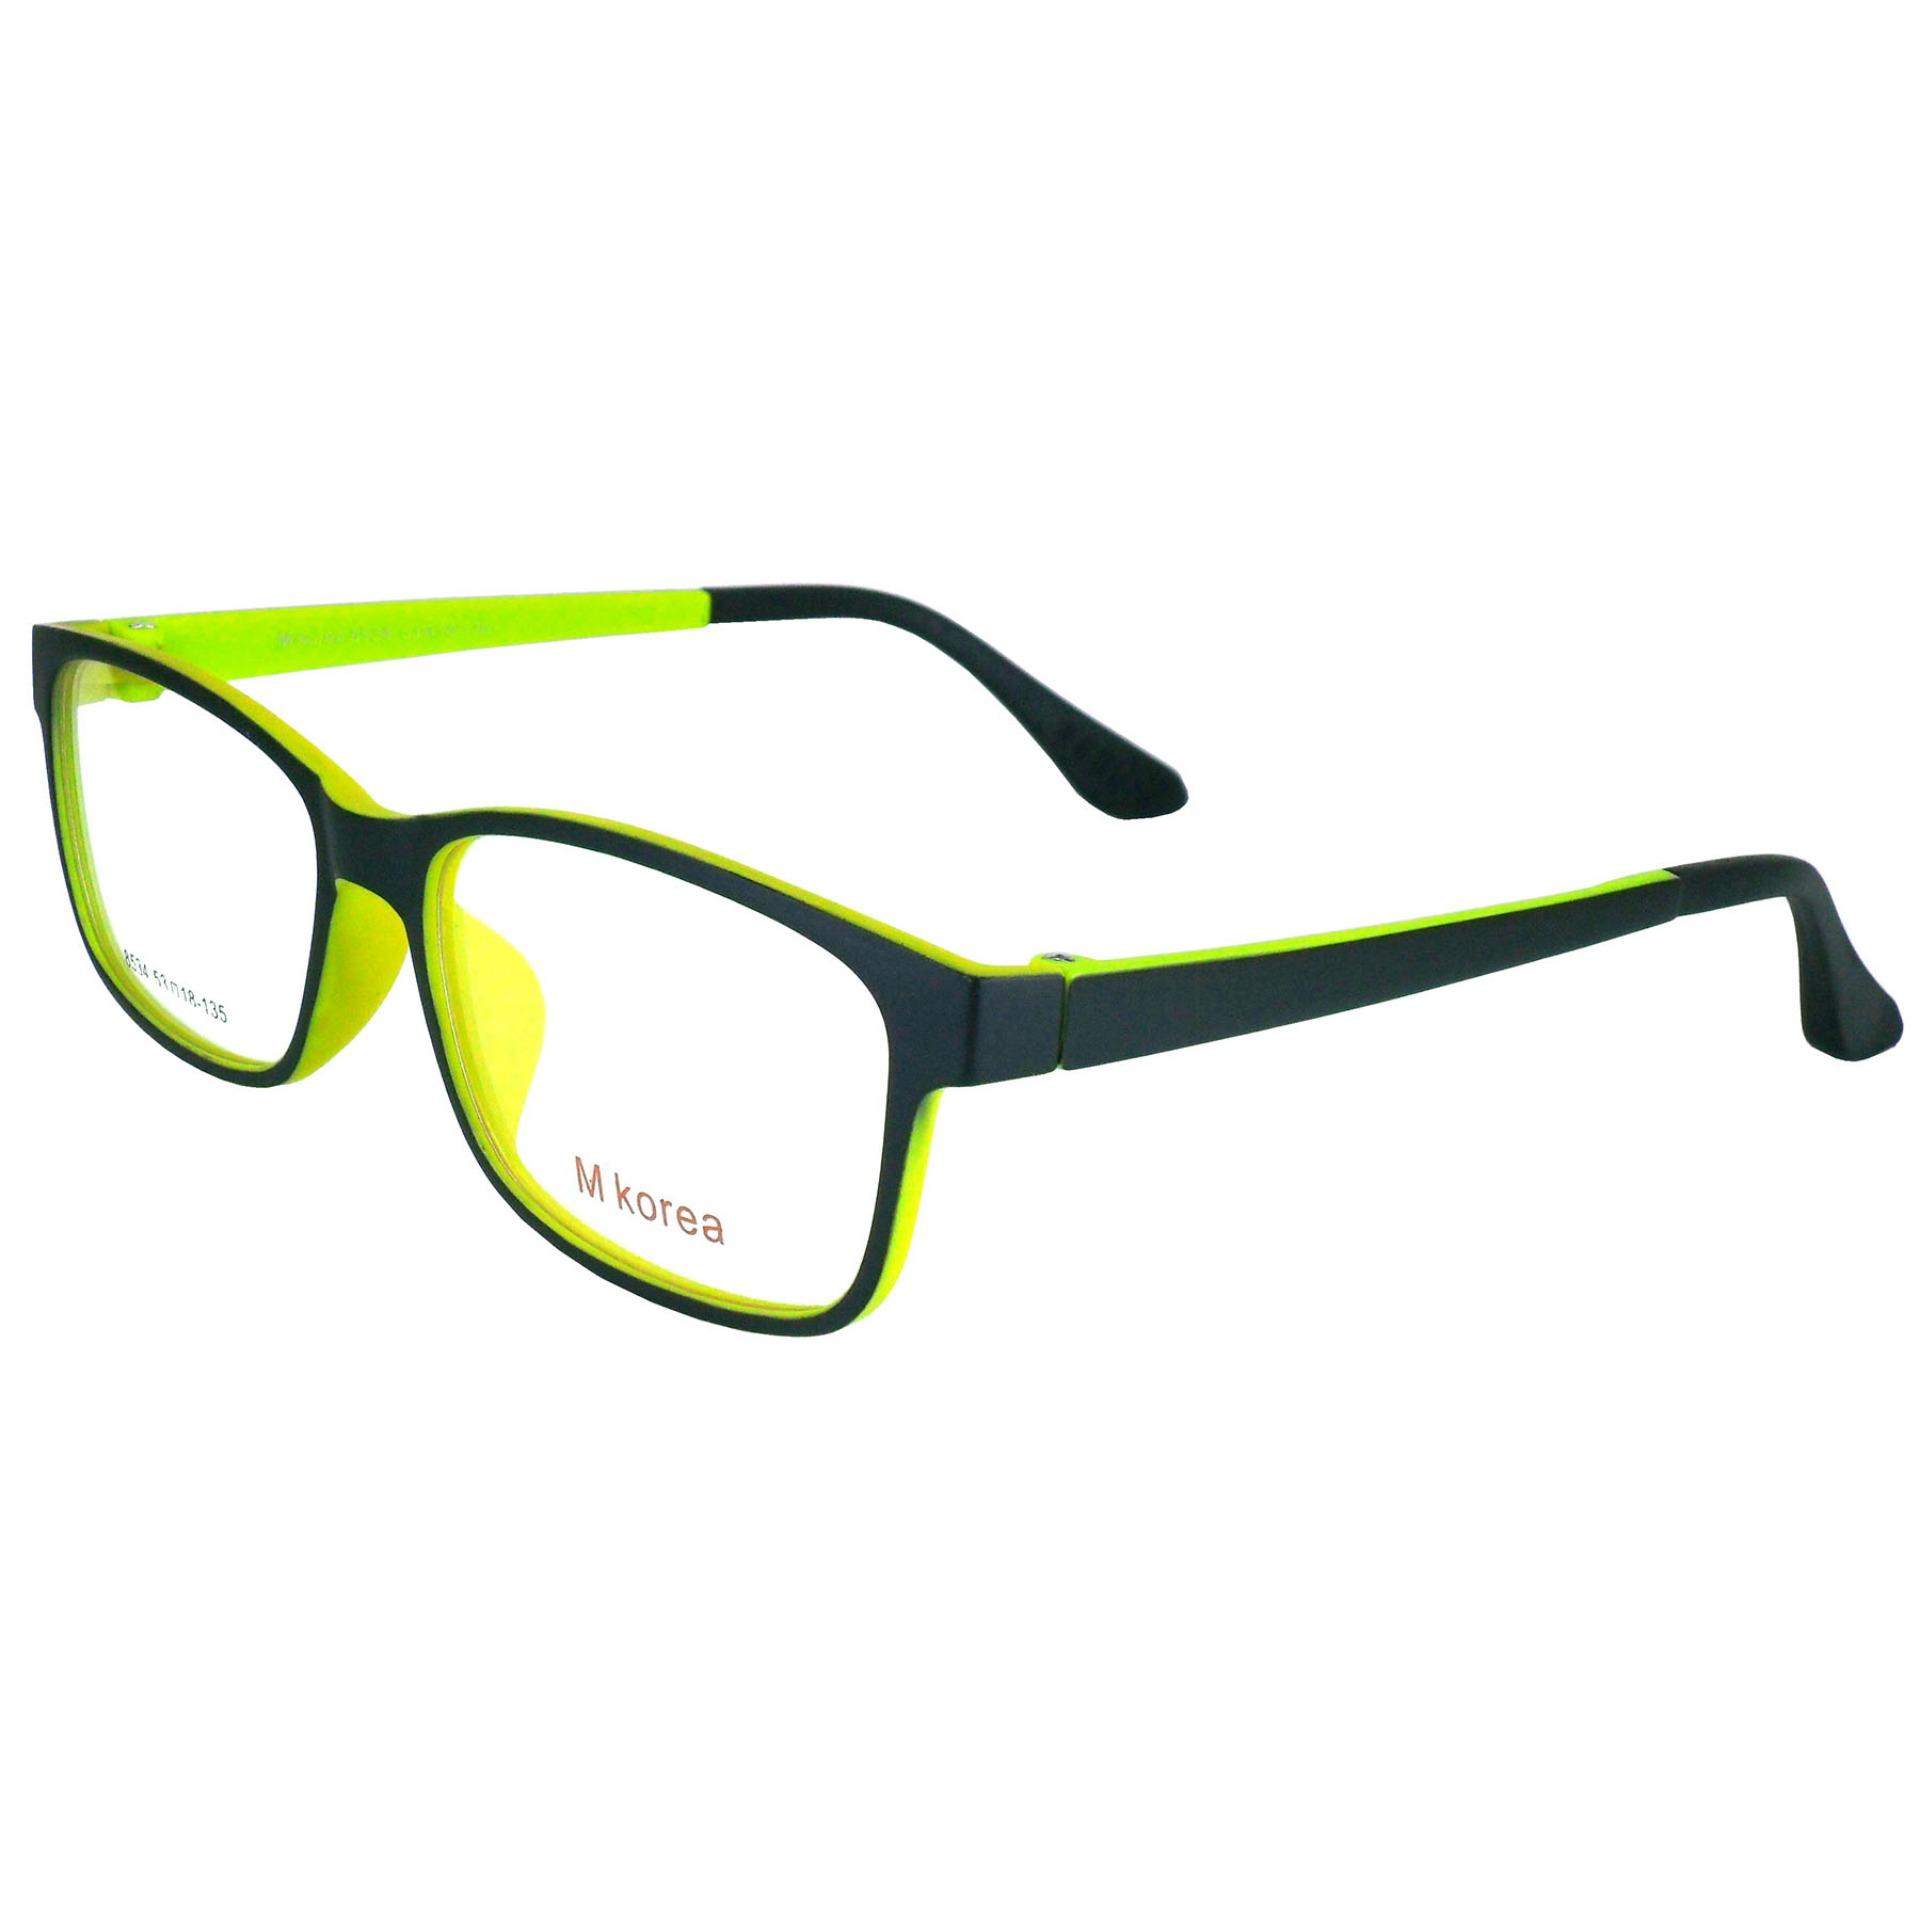 M Korea แว่นตา รุ่น 8534 ทรงสปอร์ต วัสดุ TR-90 เบาและยืดหยุนได้สูง ขาข้อต่อ ( สำหรับตัดเลนส์ ) กรอบแว่นตา แว่นสายตา แฟชั่น EyewearTop Glasses